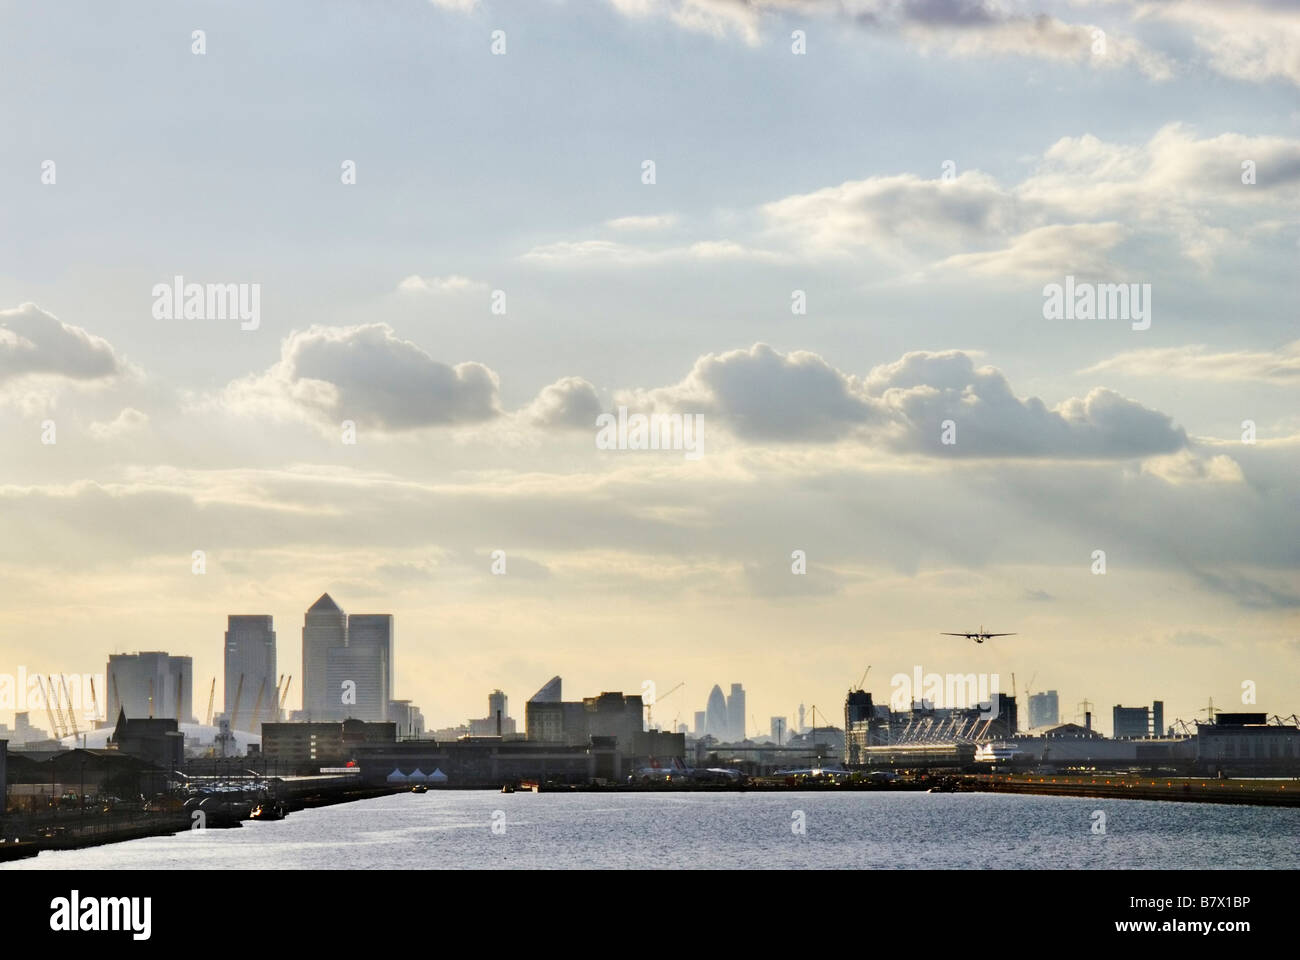 Toits de Londres à partir de l'aéroport de London City avion peut être vu décoller de la droite de l'image Banque D'Images